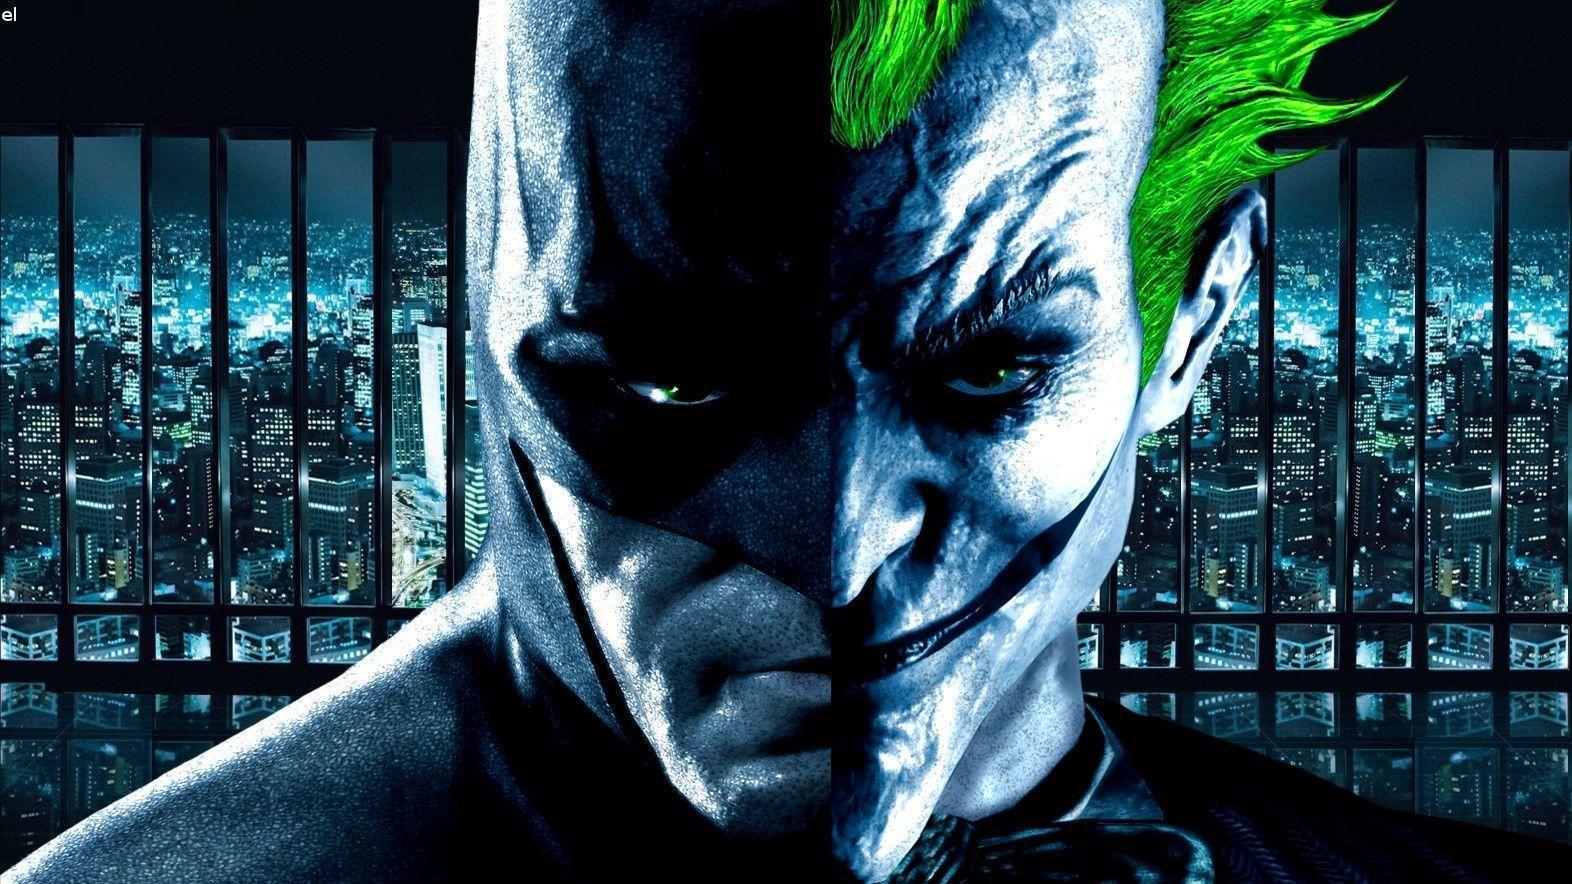 Batman Joker Wallpapers Top Free Batman Joker Backgrounds Wallpaperaccess